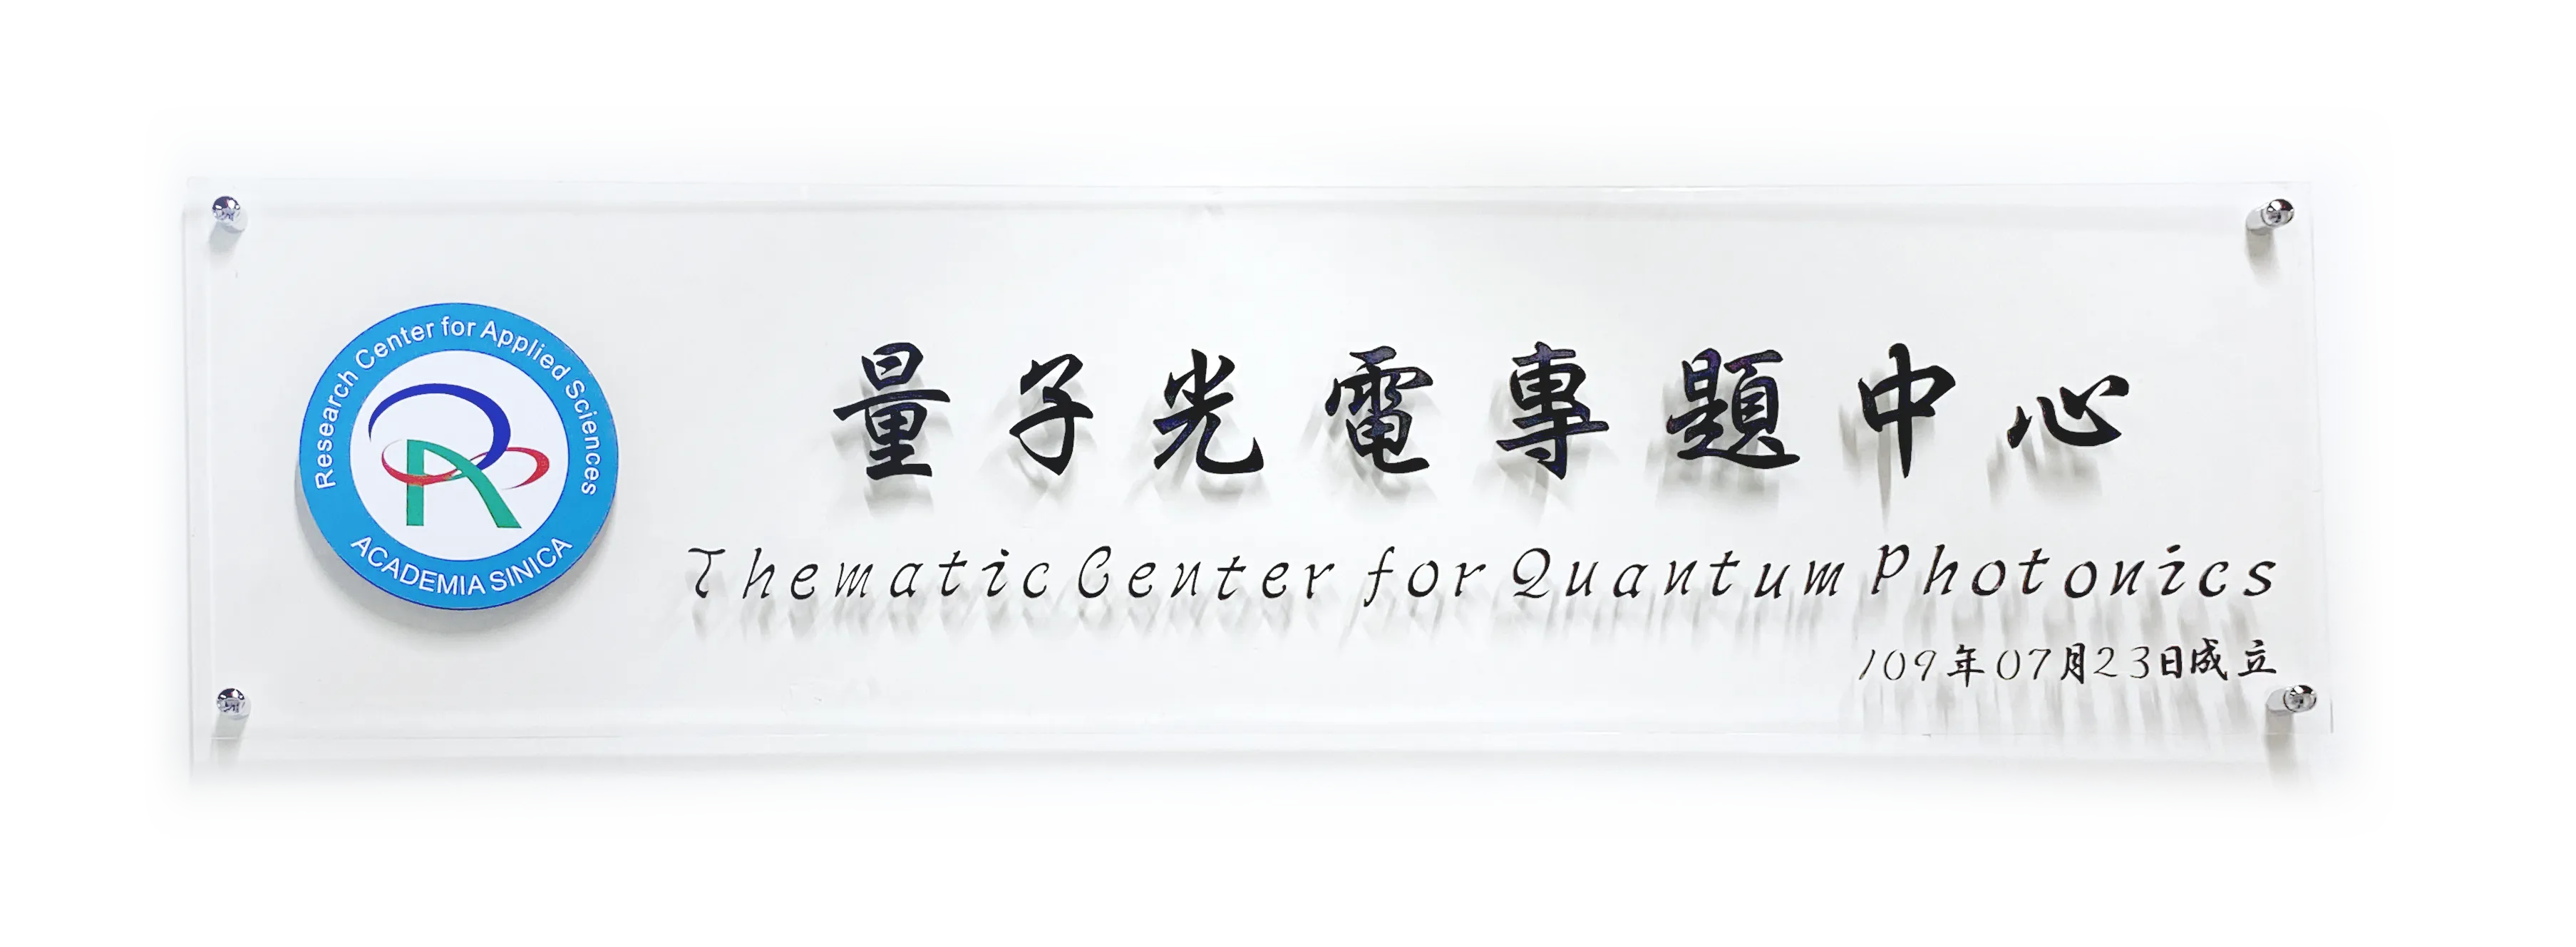 Thematic Center for Quantum Photonics